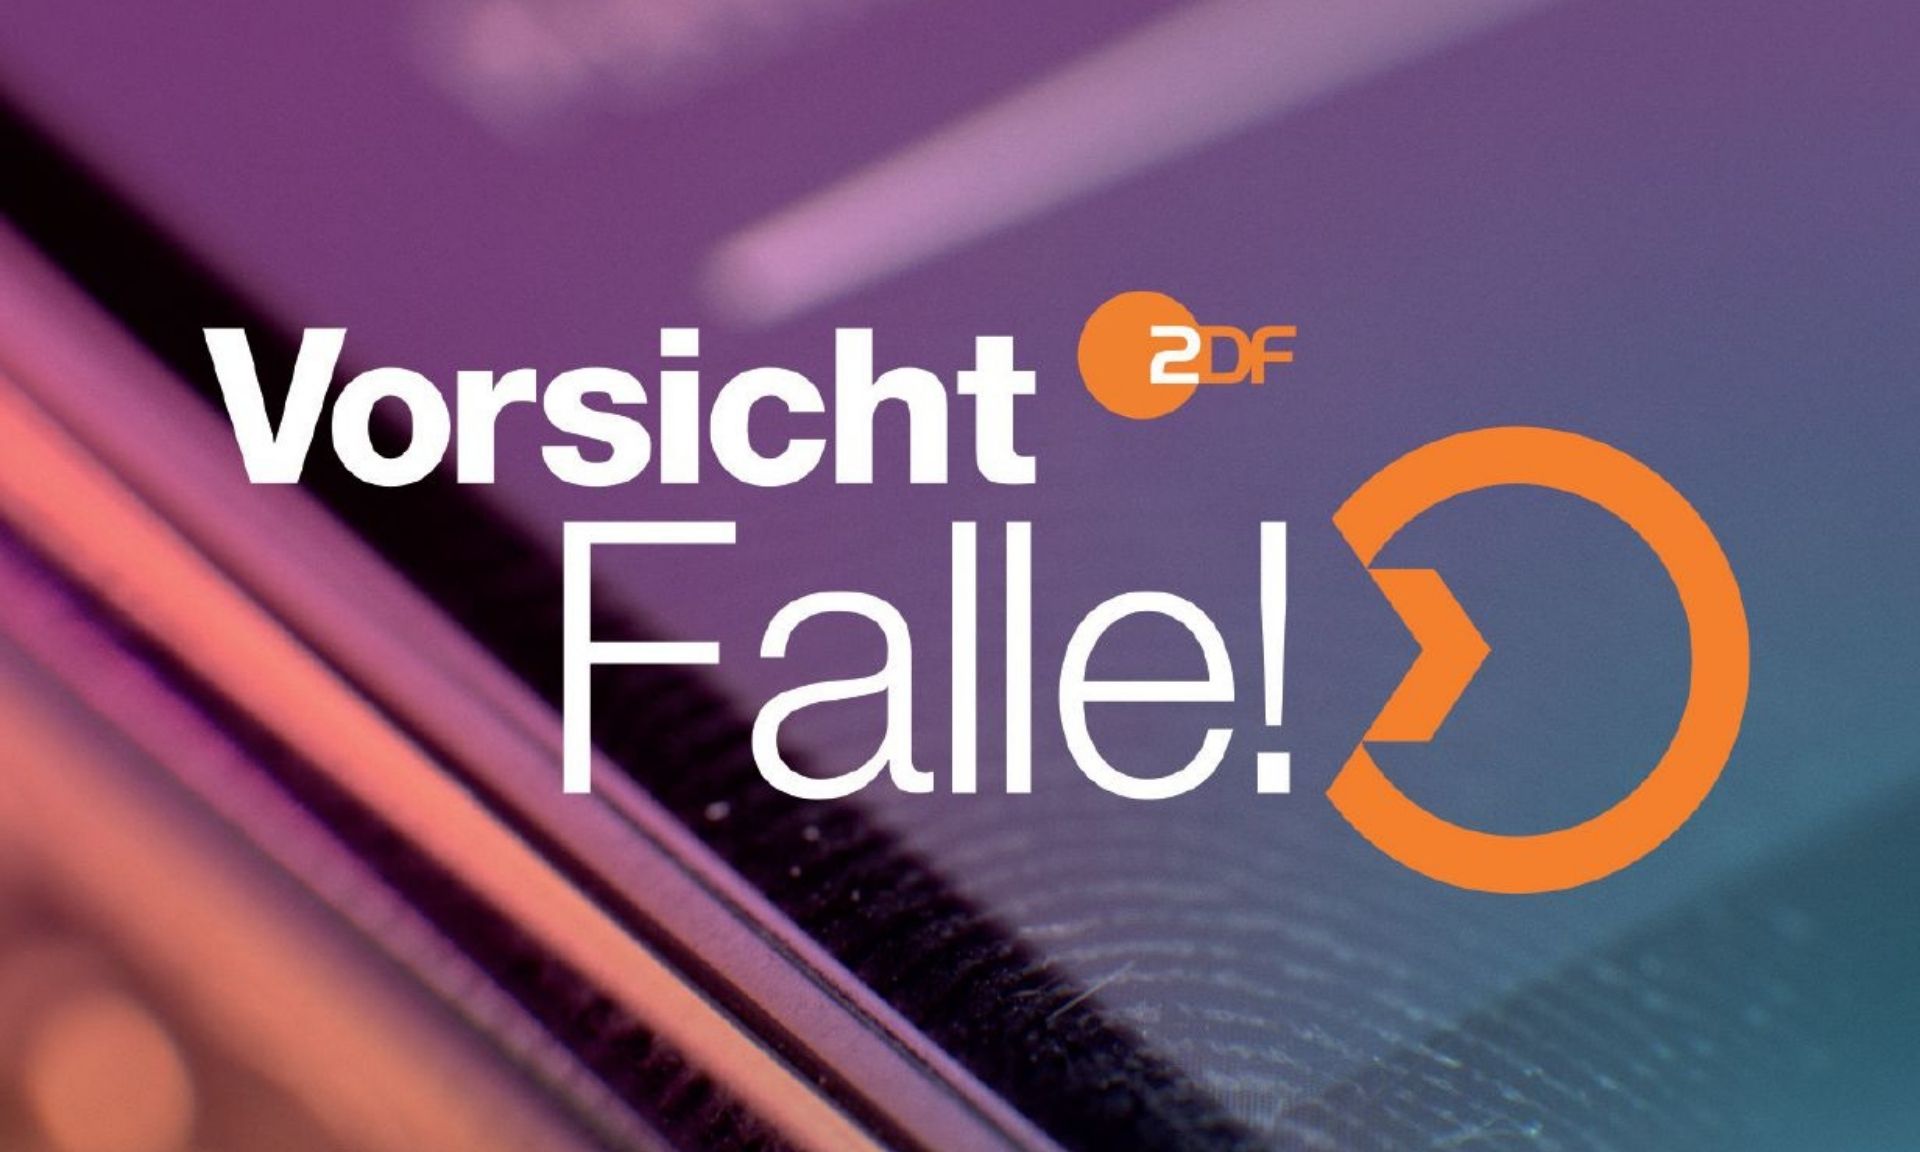 Vorsicht, Falle! ZDF Fernsehen.